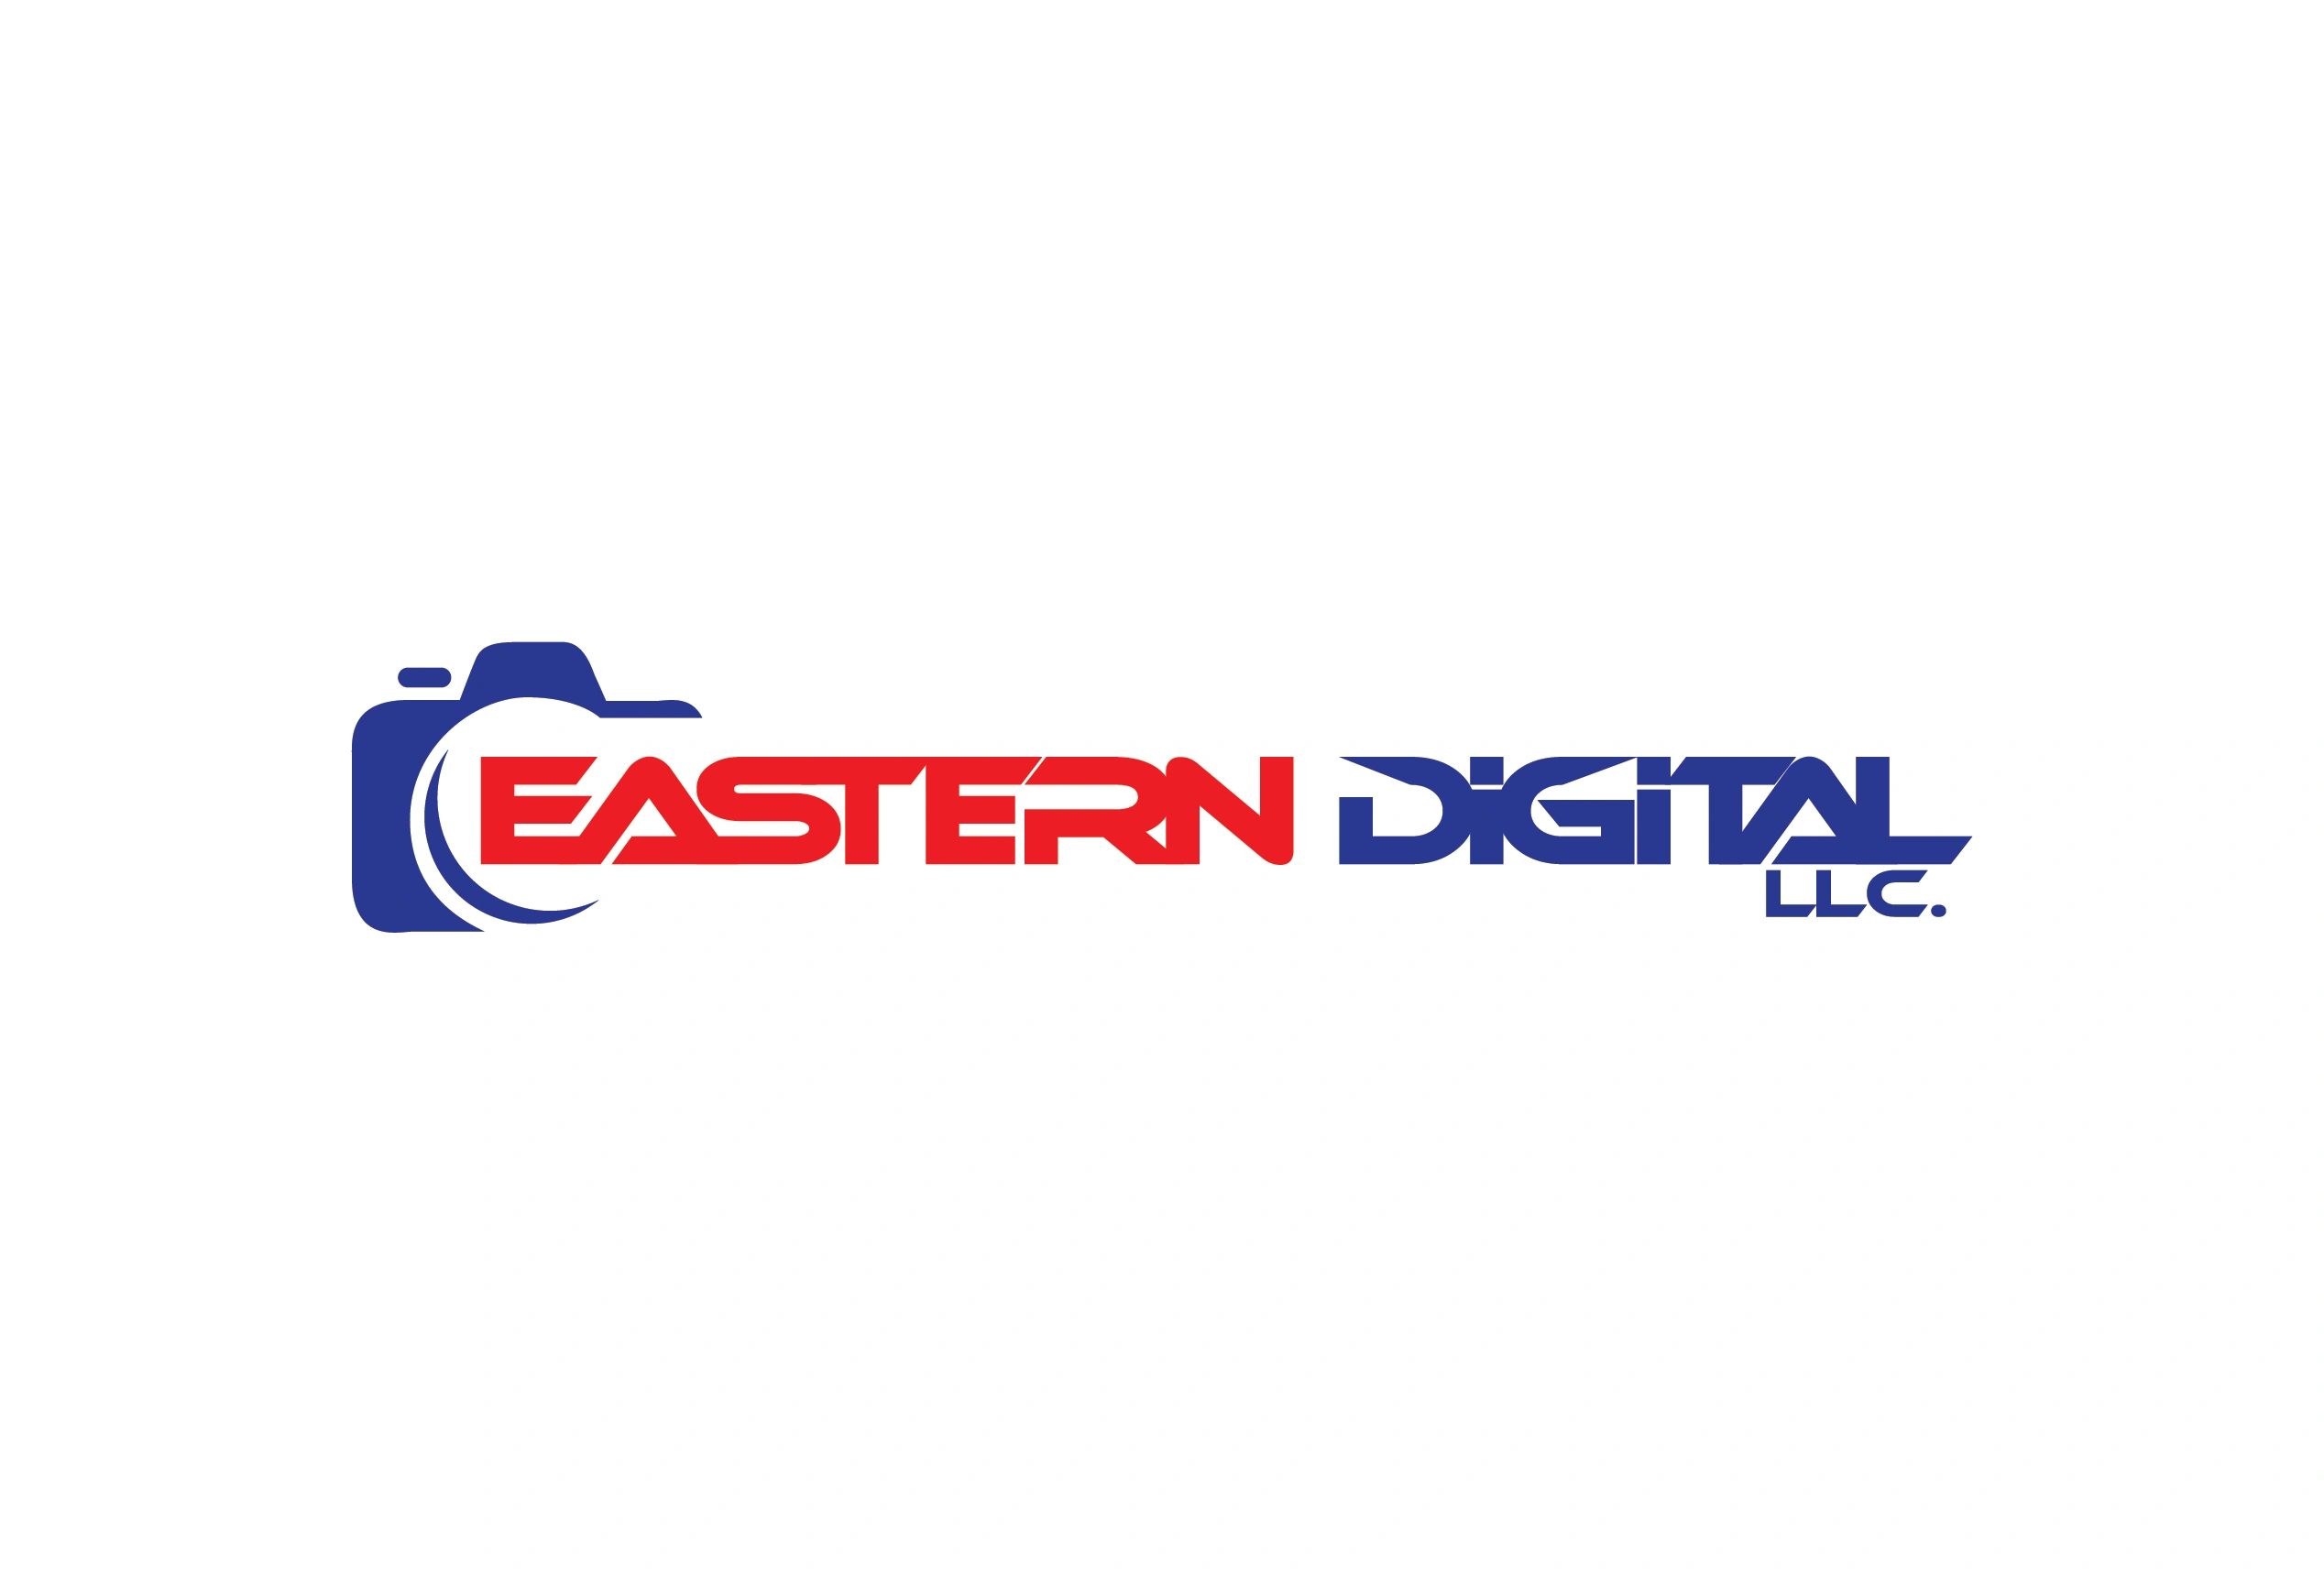 Eastern Digital llc.